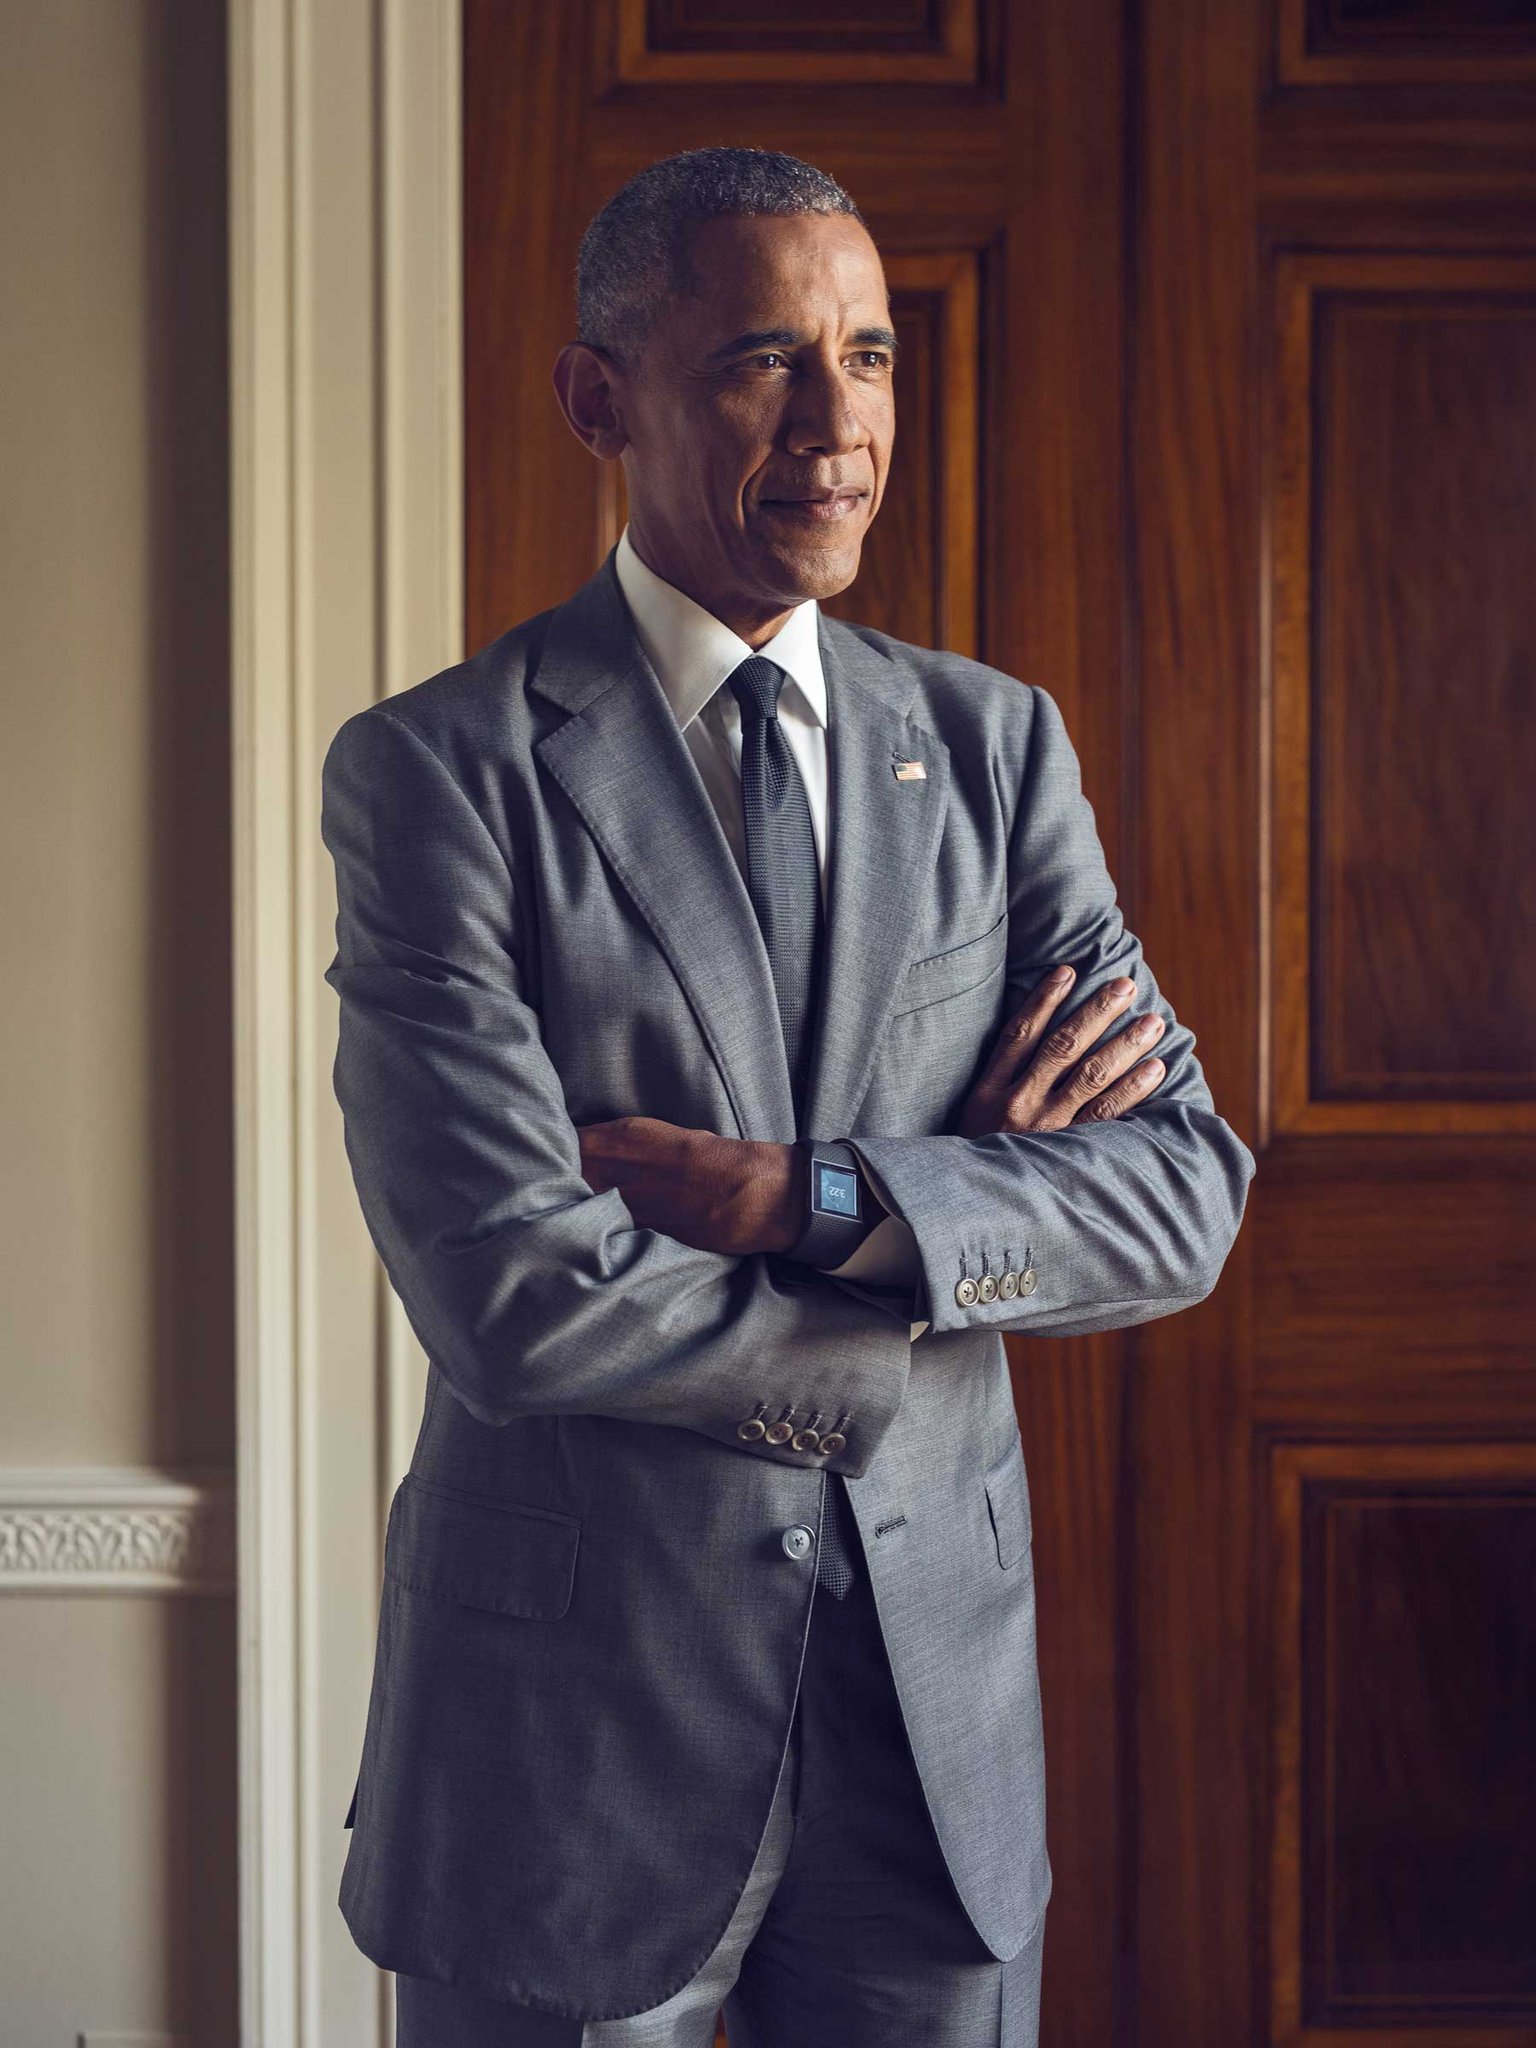 Happy Birthday to former POTUS Barack Obama! 